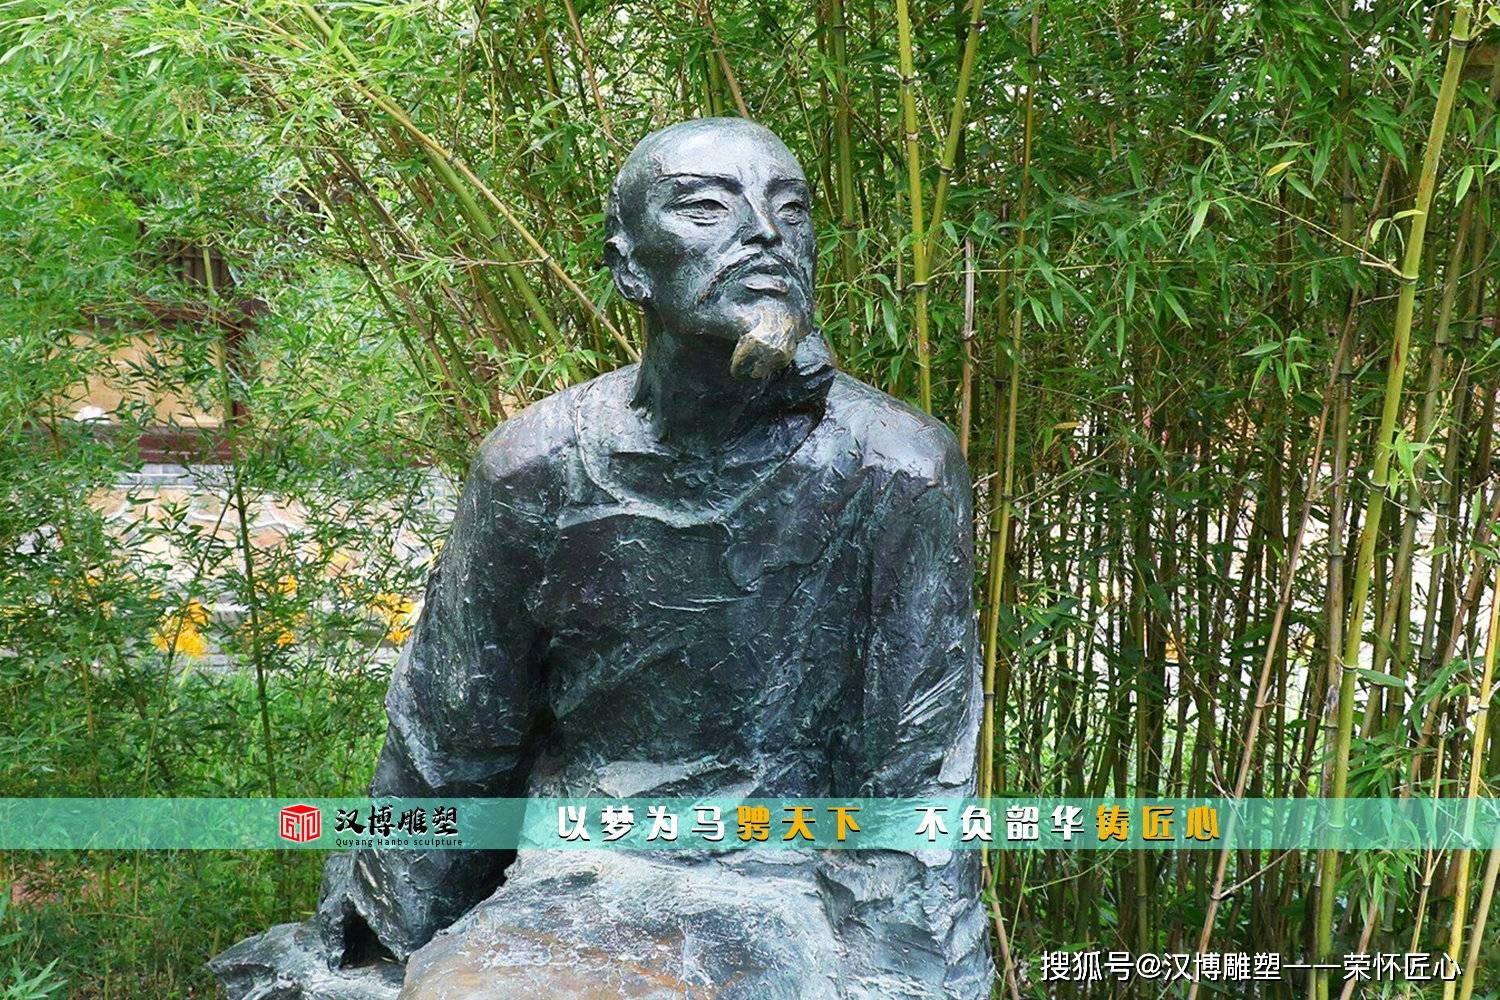 历史人物雕塑 中国历史上杰出的人物